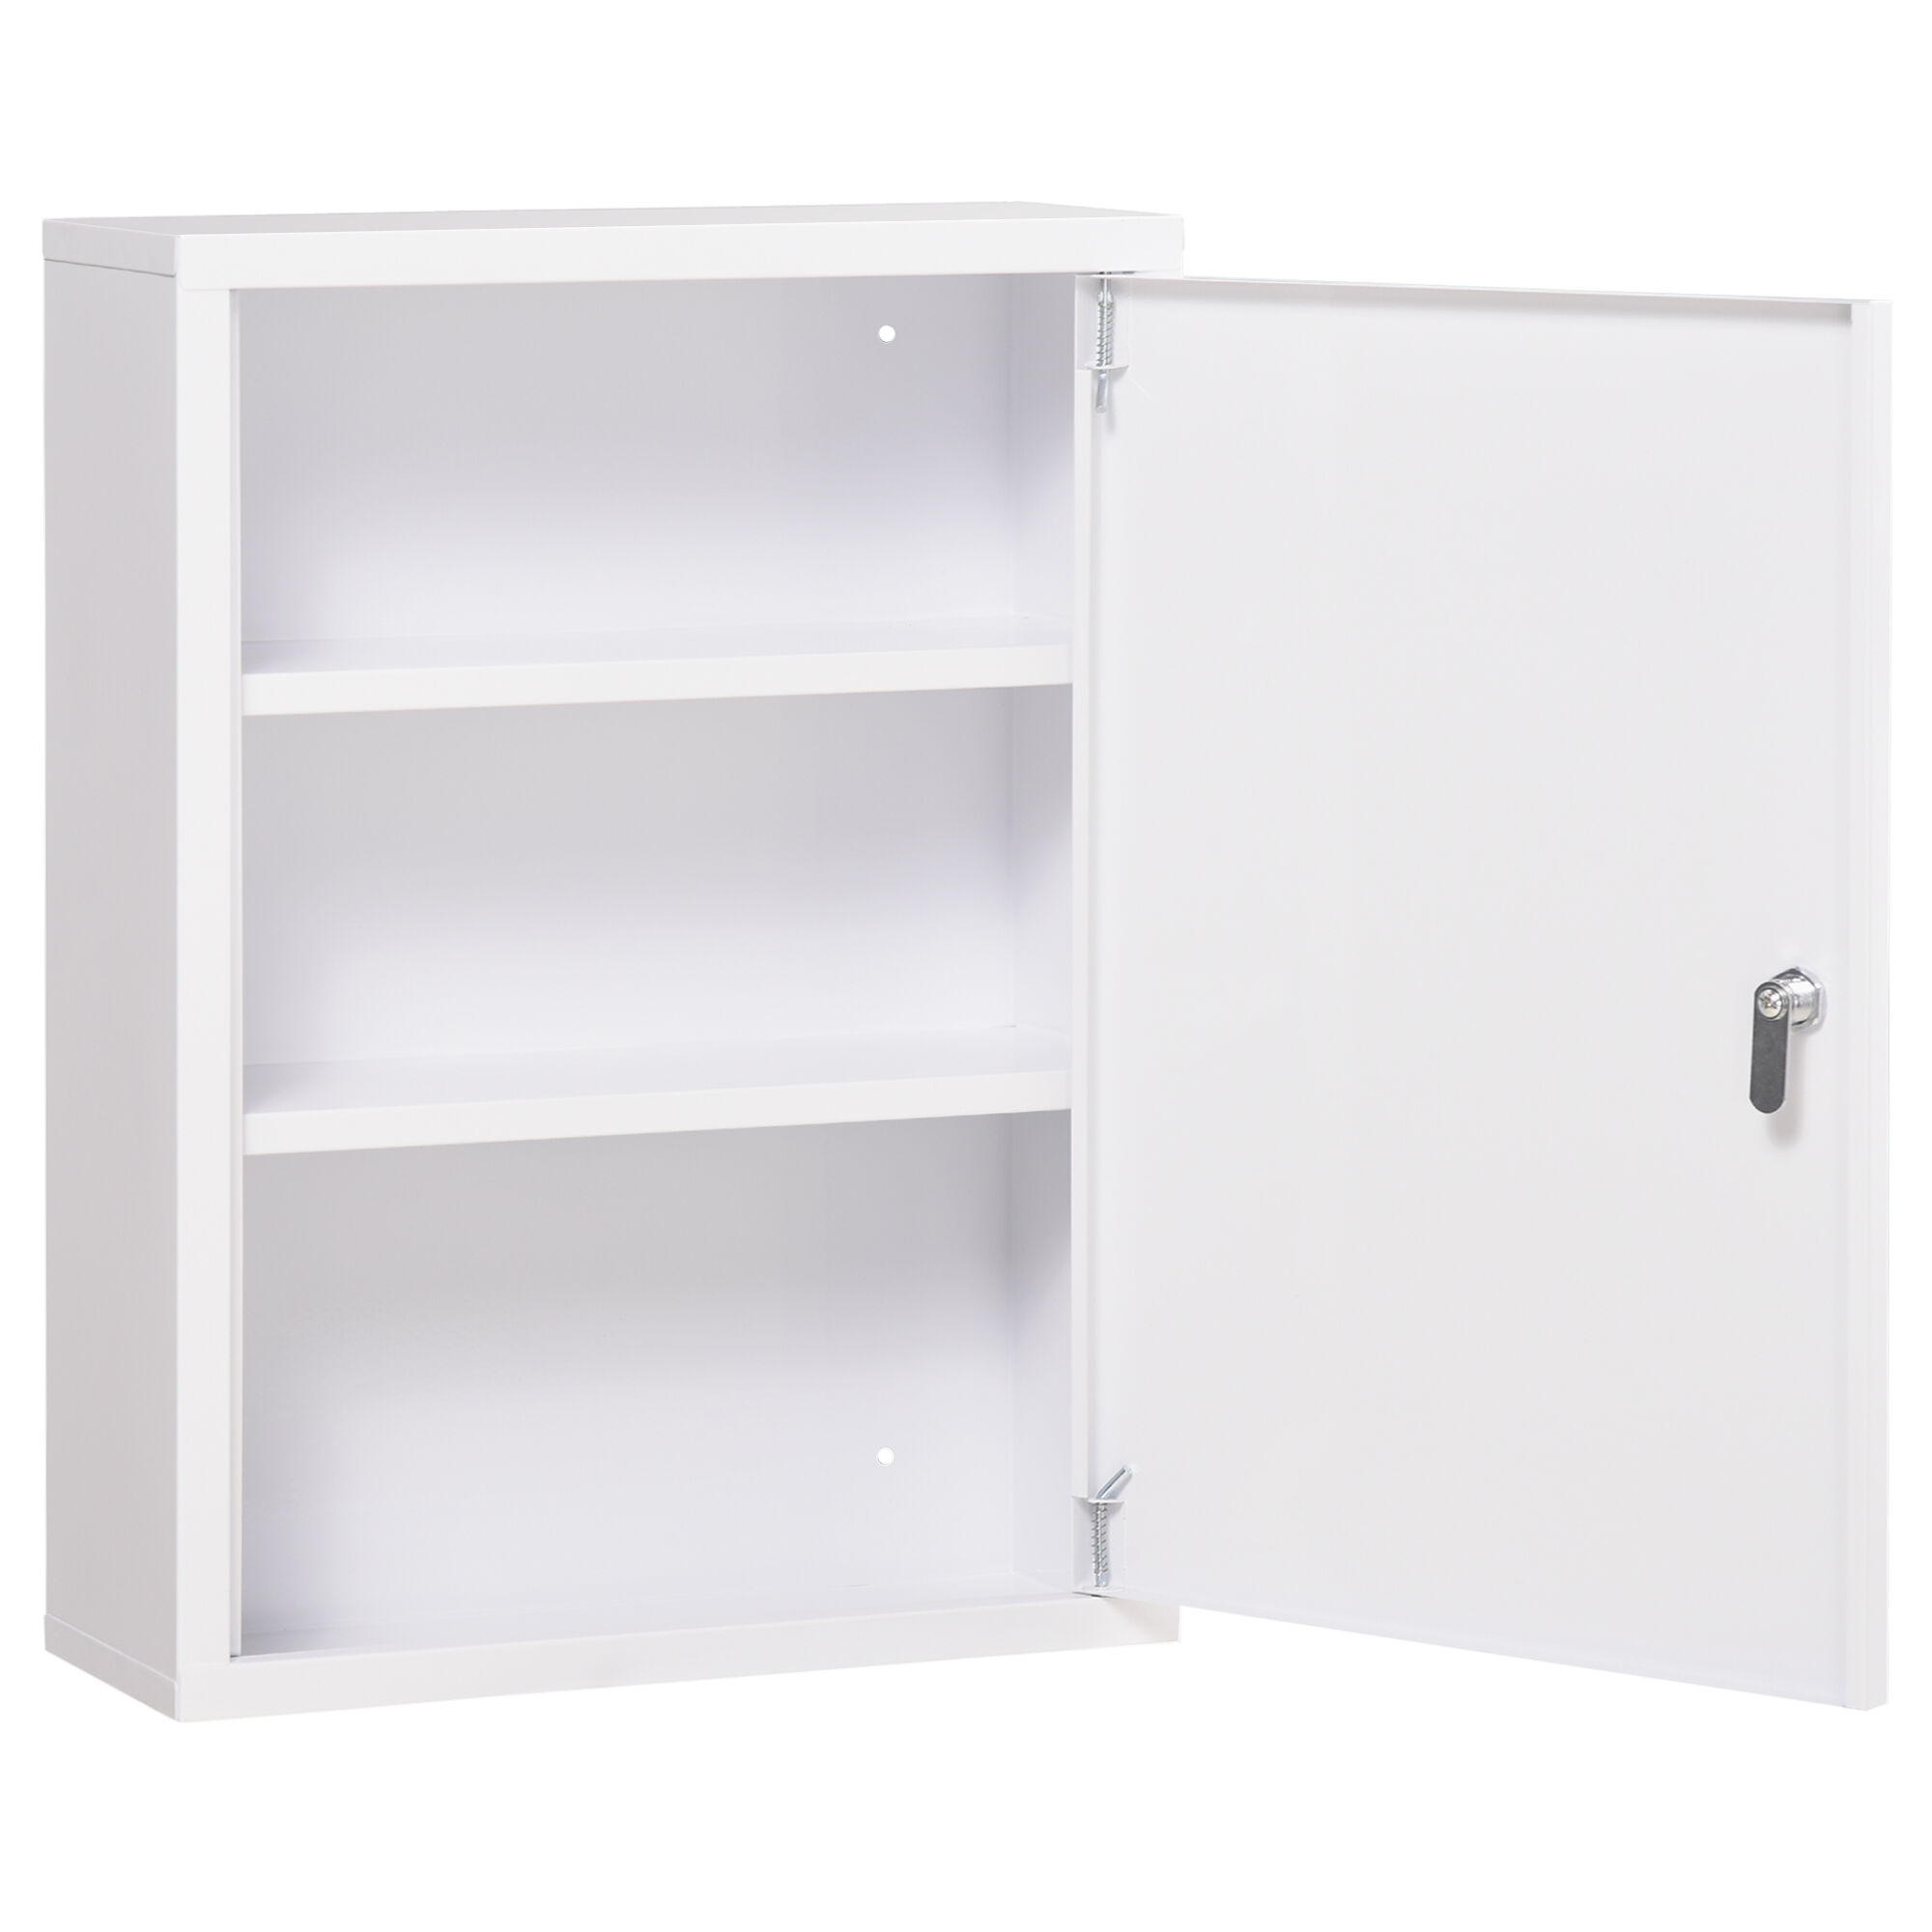 kleankin Lockable Medicine Cabinet 3 Tier Steel Wall Box 2 Keys Shelves White   Aosom.com